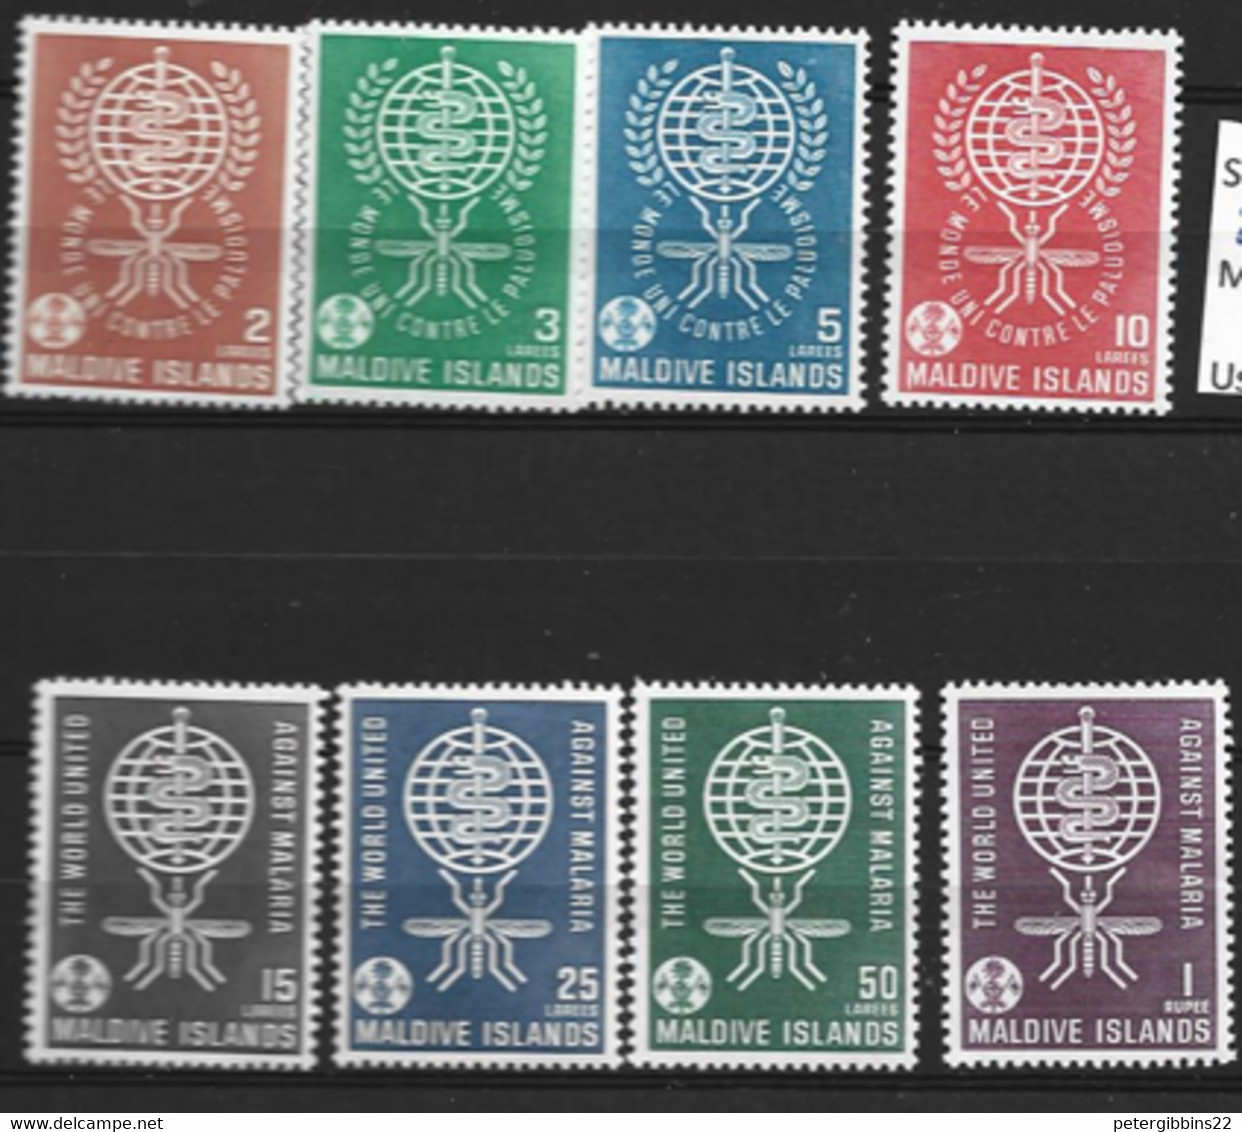 Maldives   1962   SG 88-95  Malaria     Unmounted Mint - Malediven (...-1965)